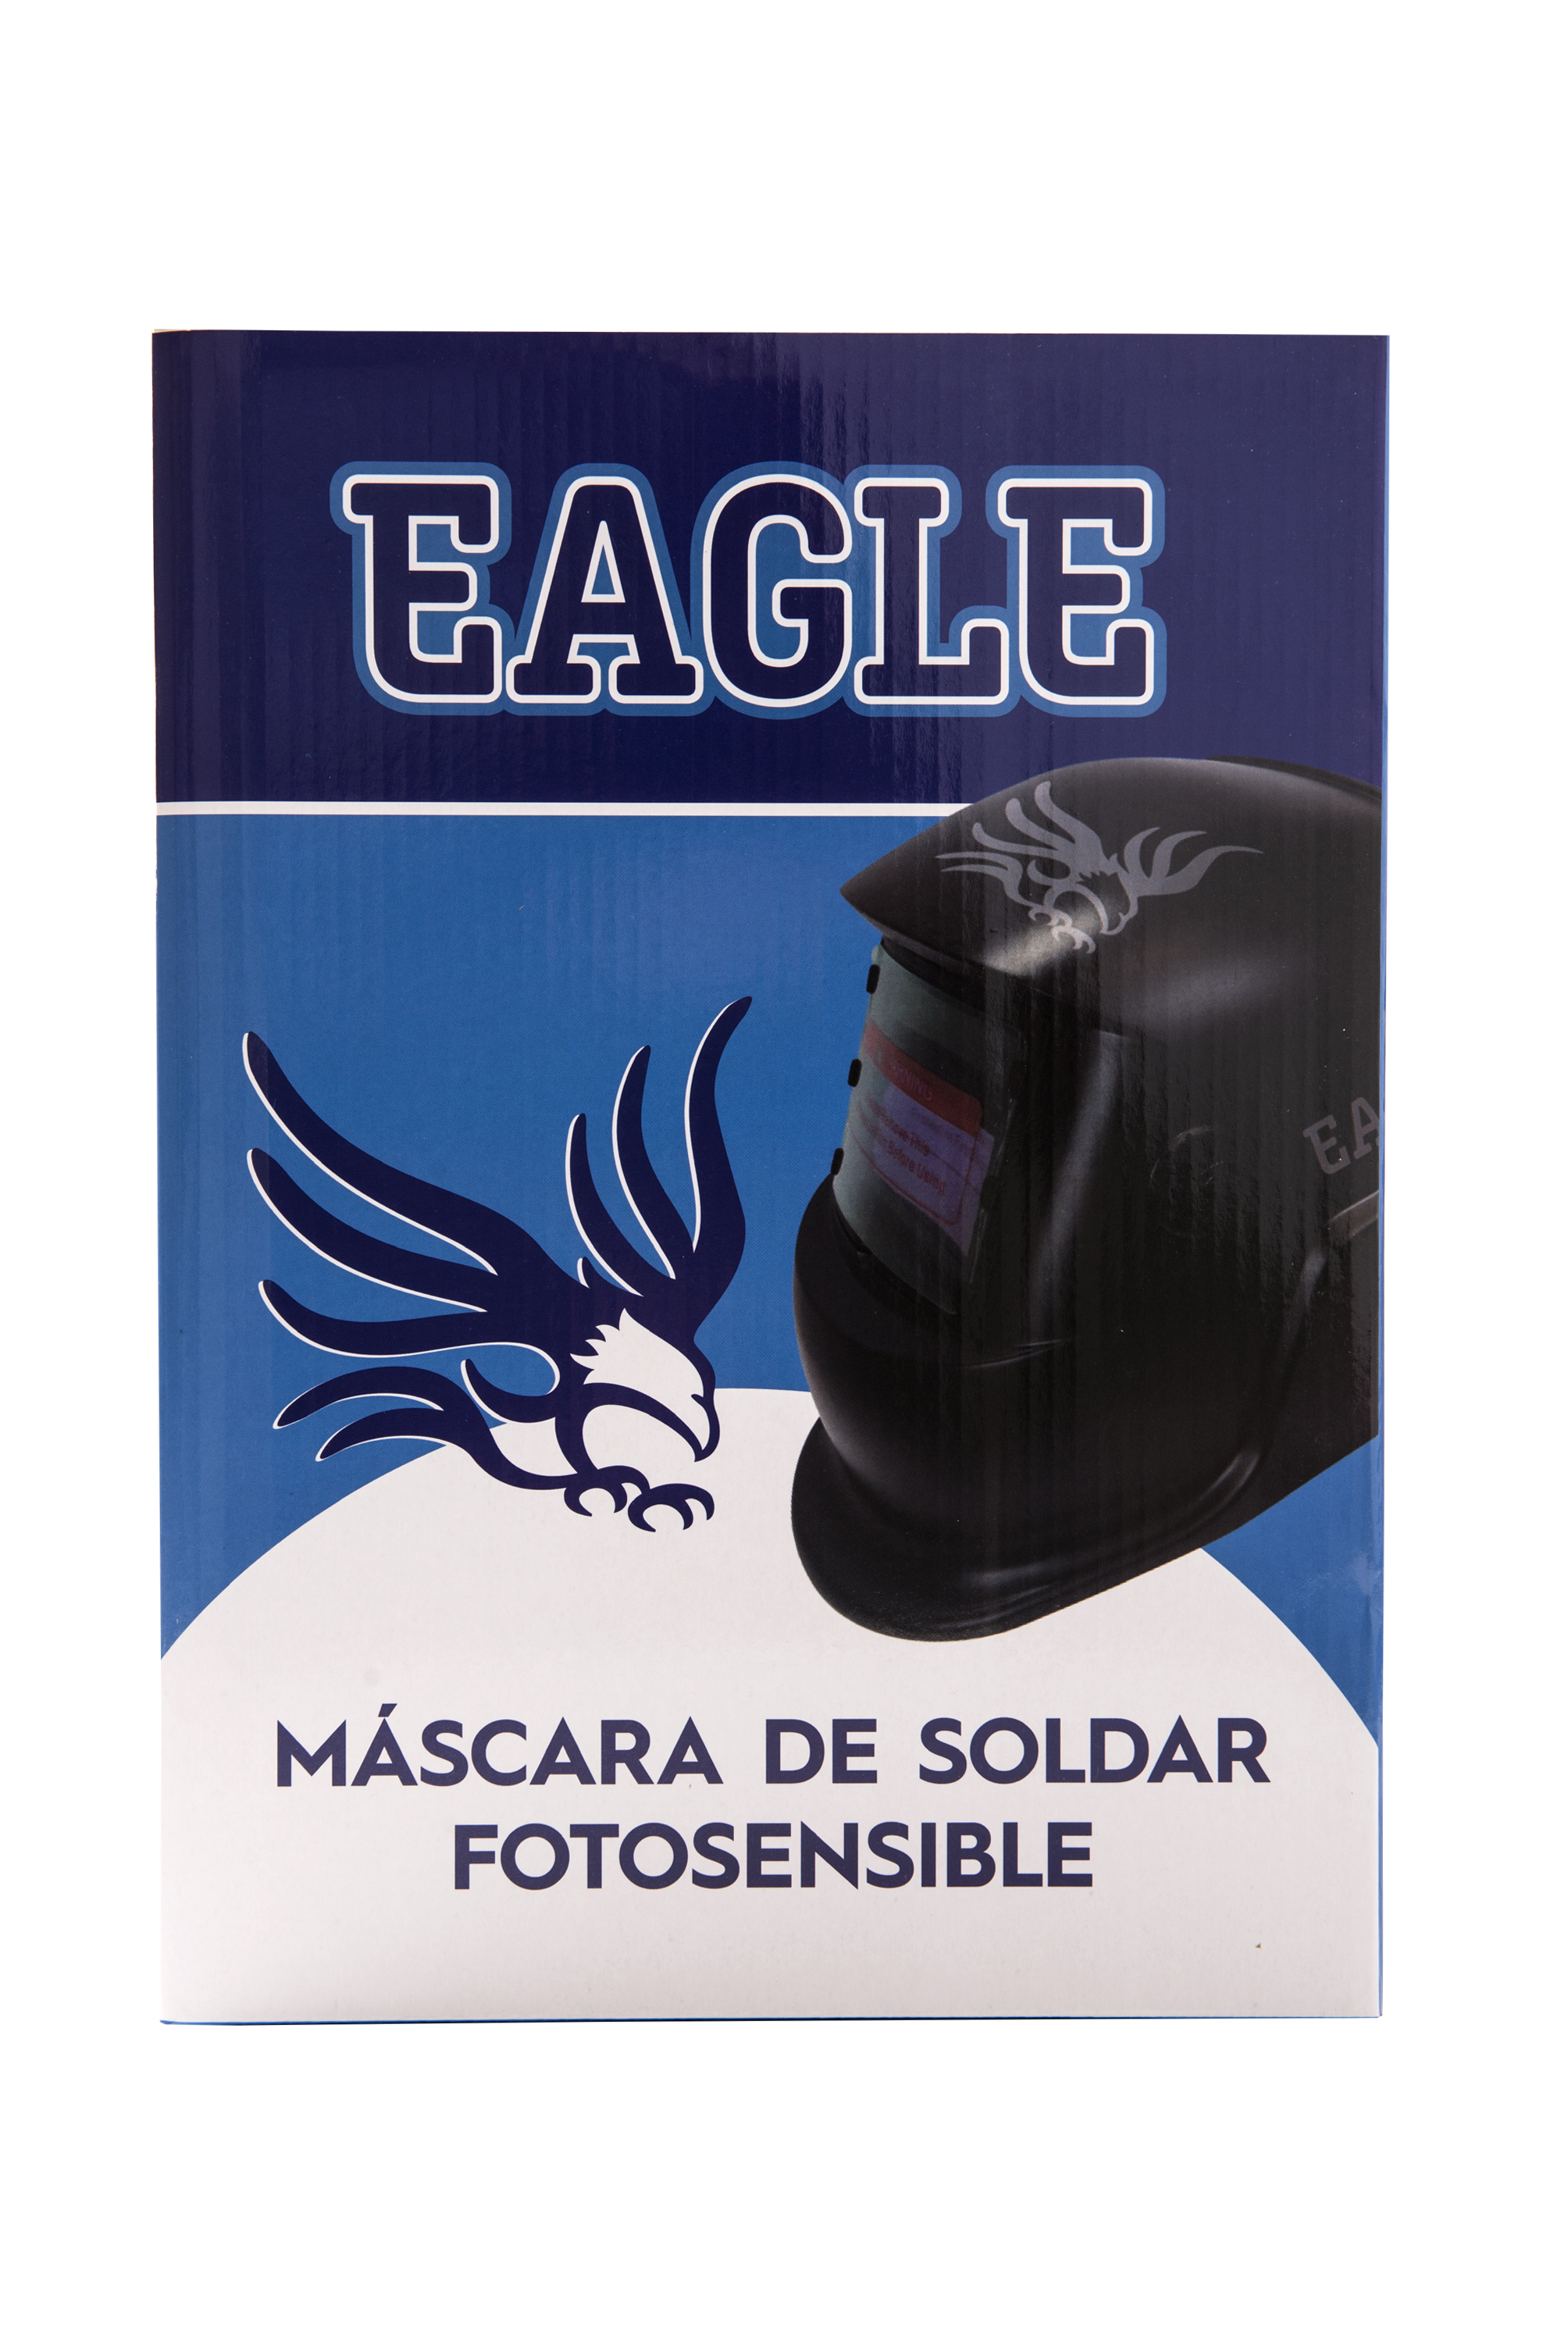 MASCARA DE SOLDAR FOTOSENSIBLE CLASSIC US EAGLE